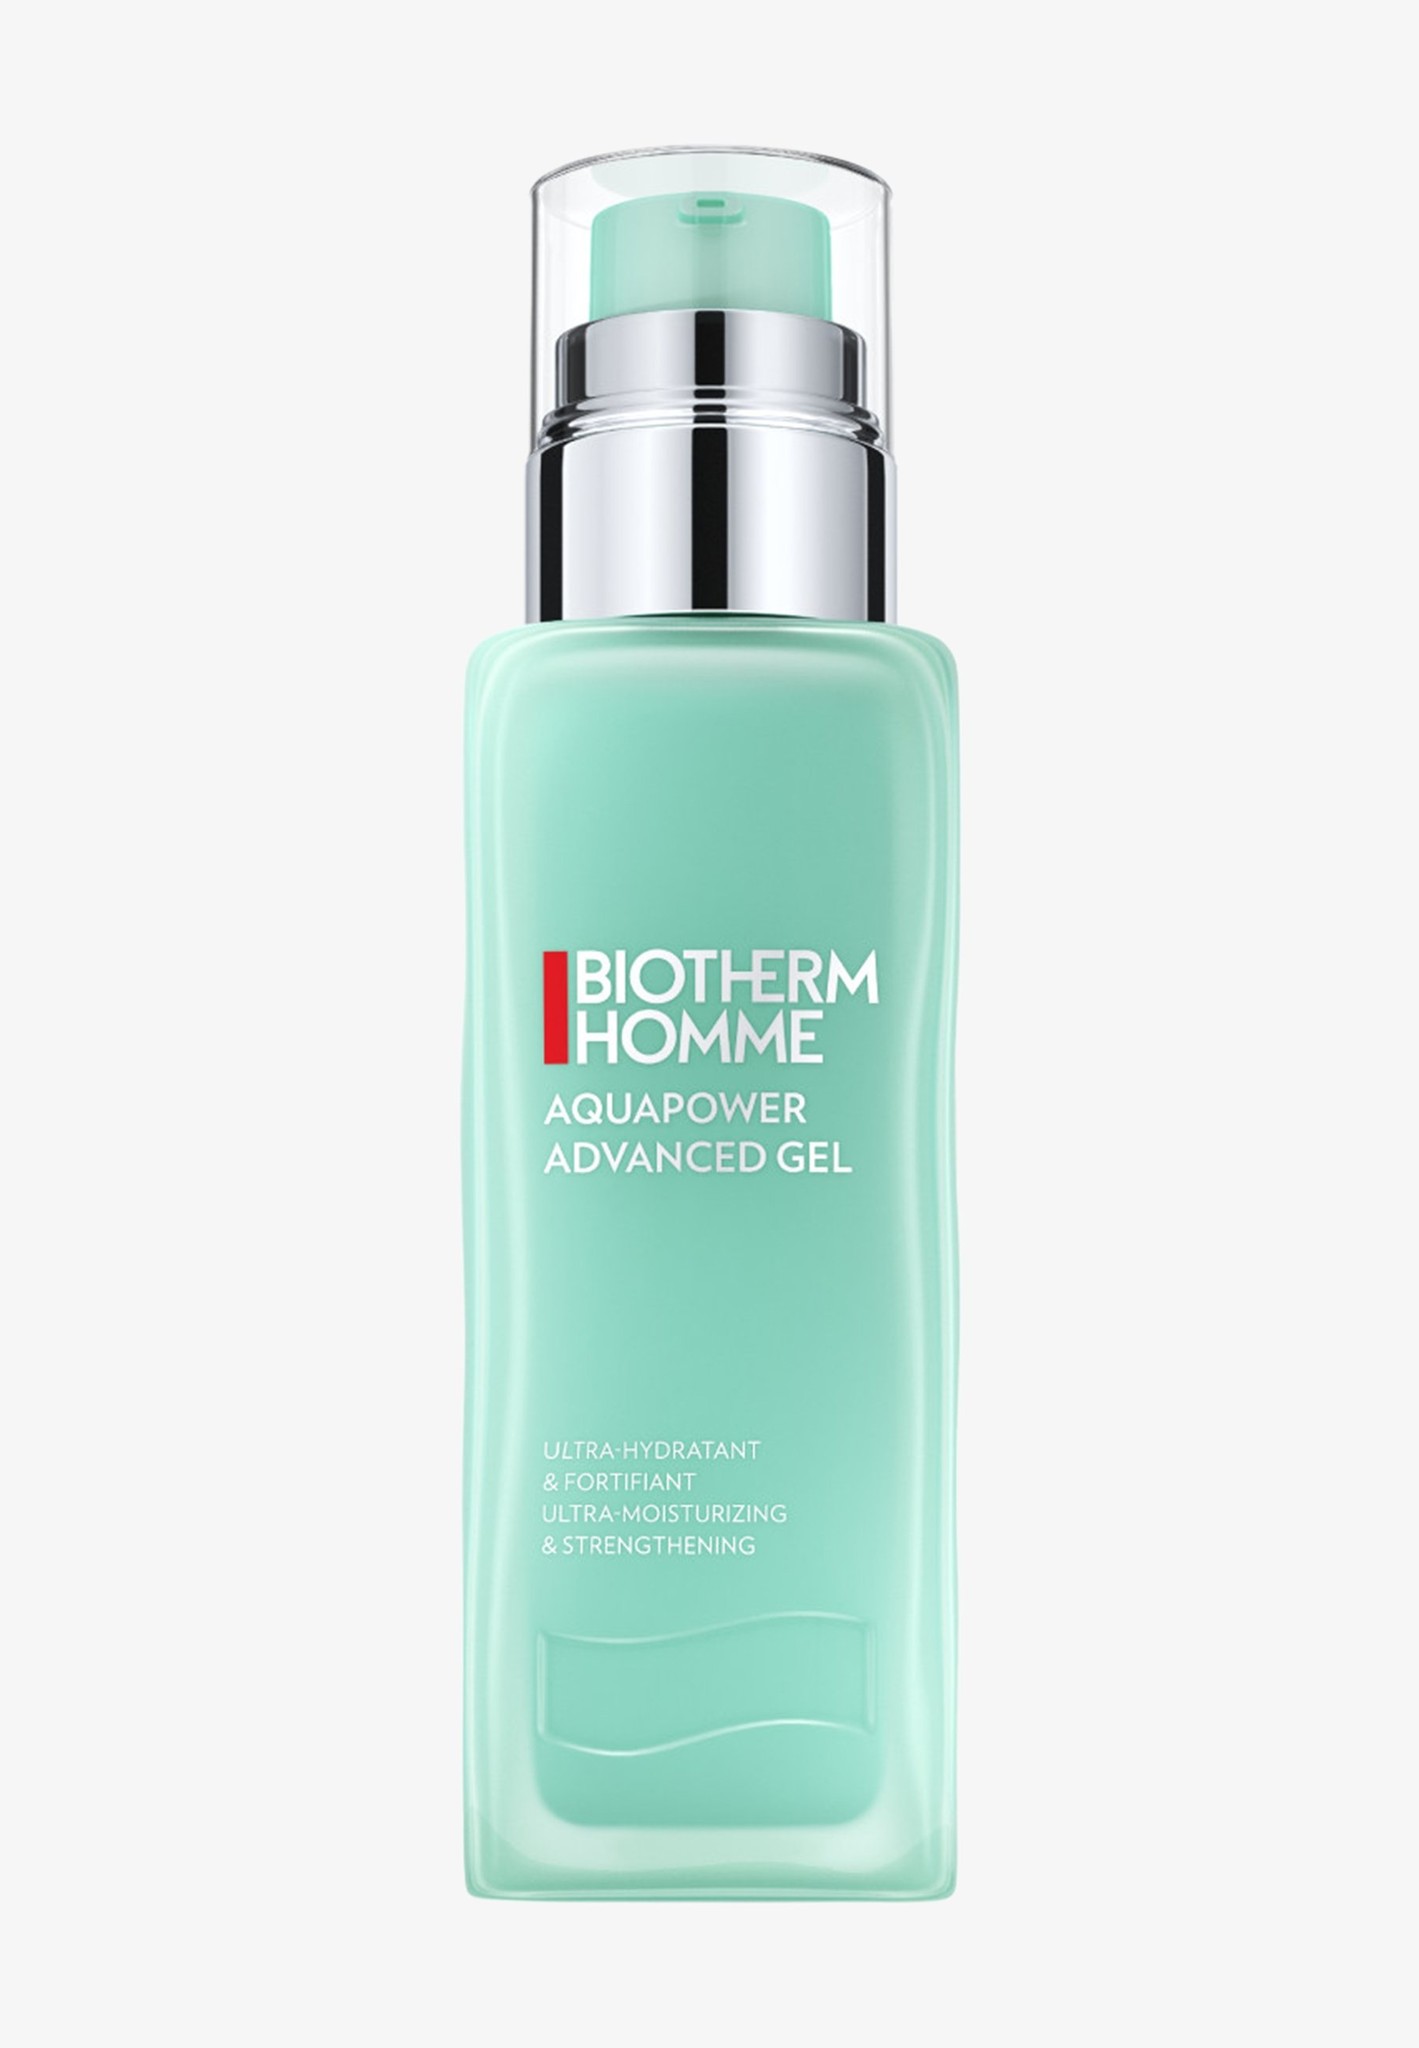 Biotherm Homme Aquapower Advanced Gel - Crème de Jour 75 ml - Emballage abîmé